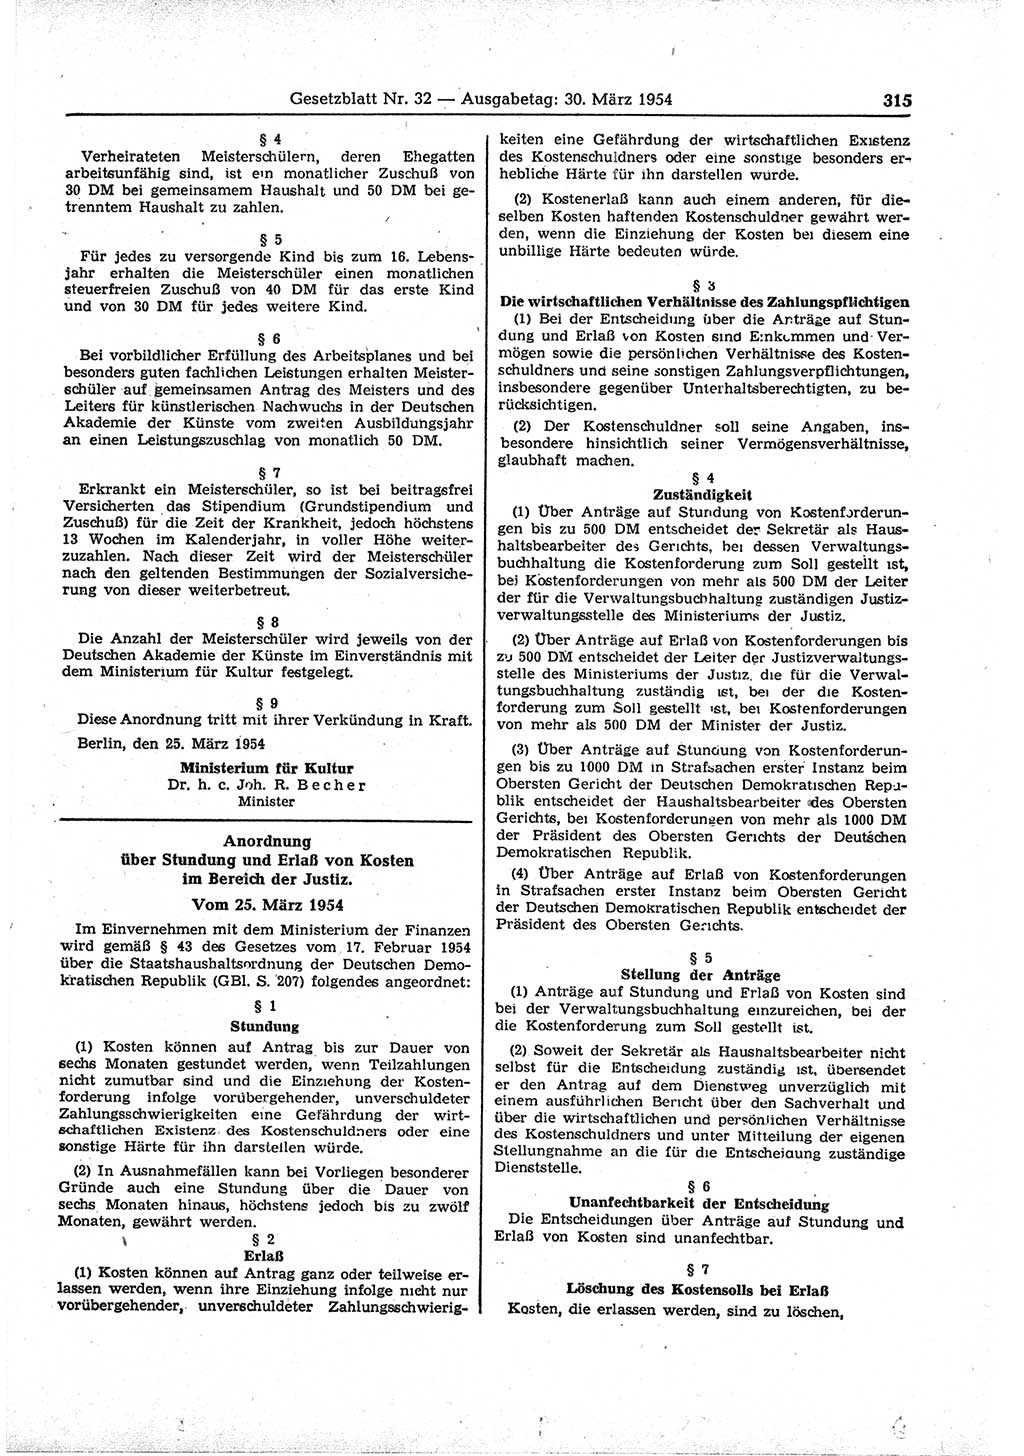 Gesetzblatt (GBl.) der Deutschen Demokratischen Republik (DDR) 1954, Seite 315 (GBl. DDR 1954, S. 315)